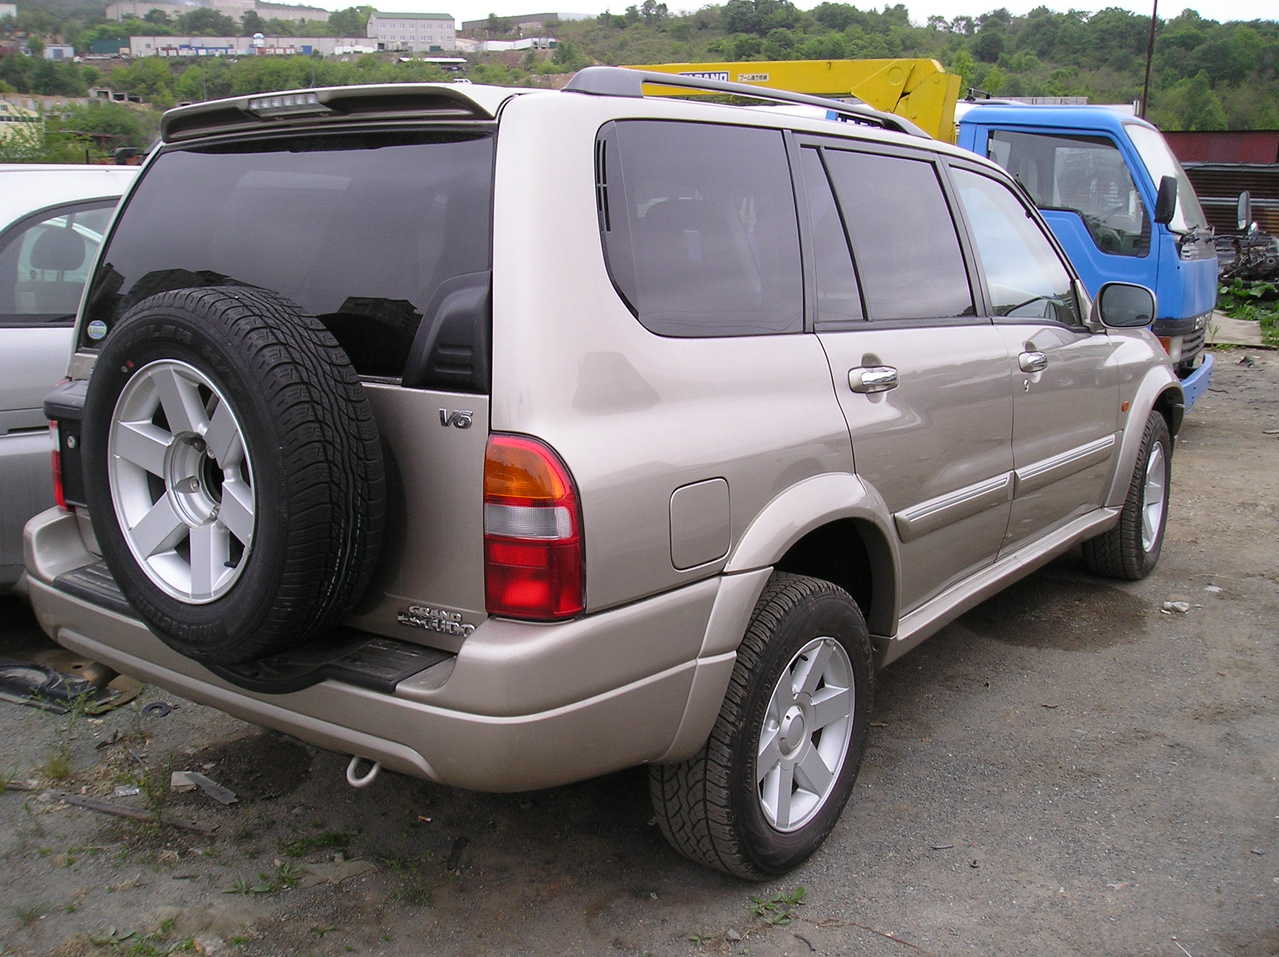 Suzuki Grand Escudo 2001